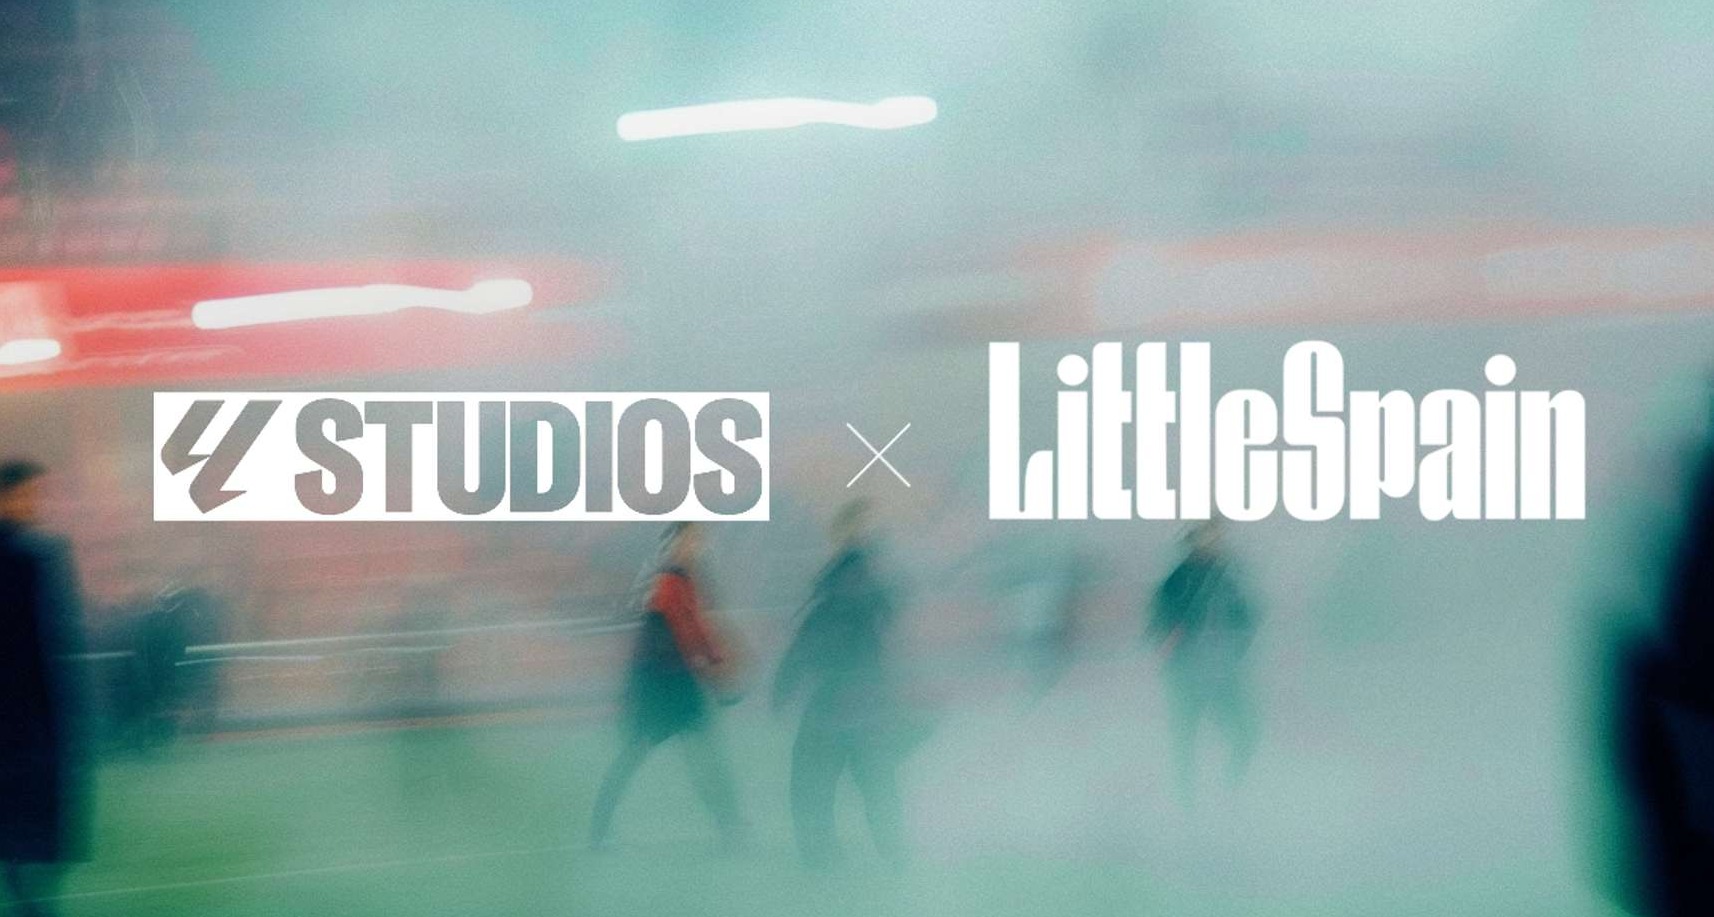 Acuerdo entre LaLiga Studios y Little Spain